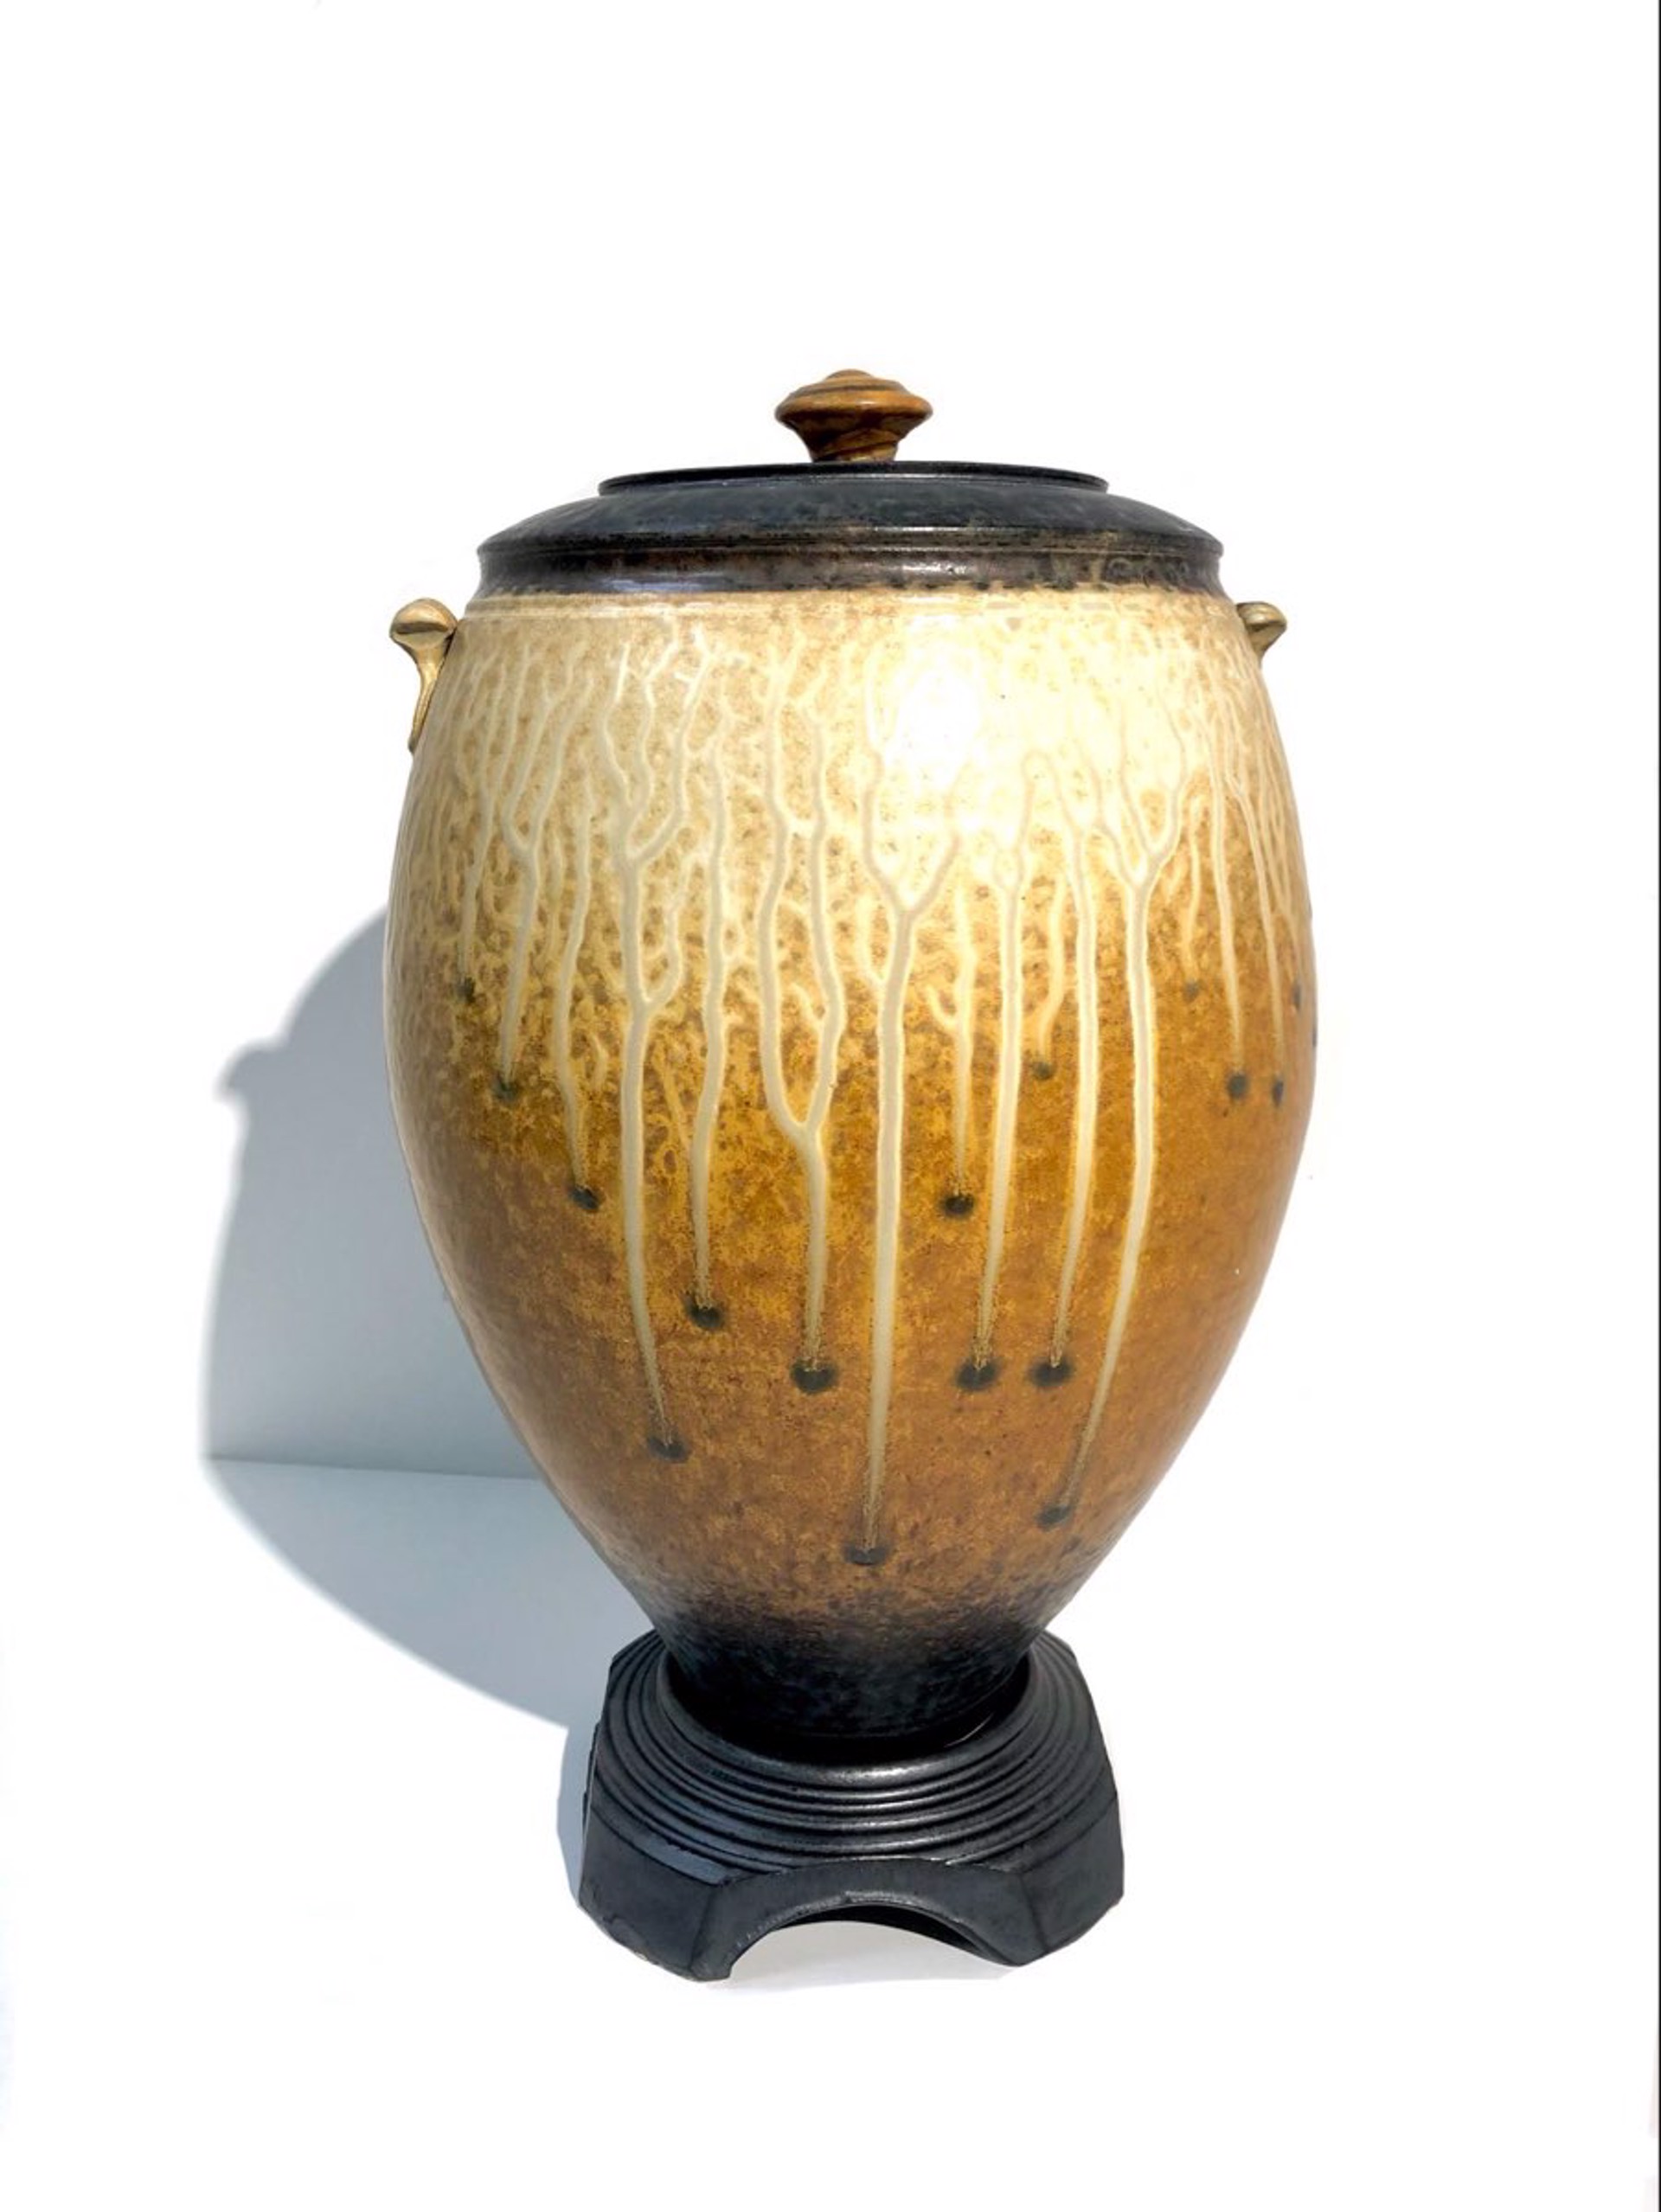 Egg Jar with Clay Pedestal  by Richard Aerni